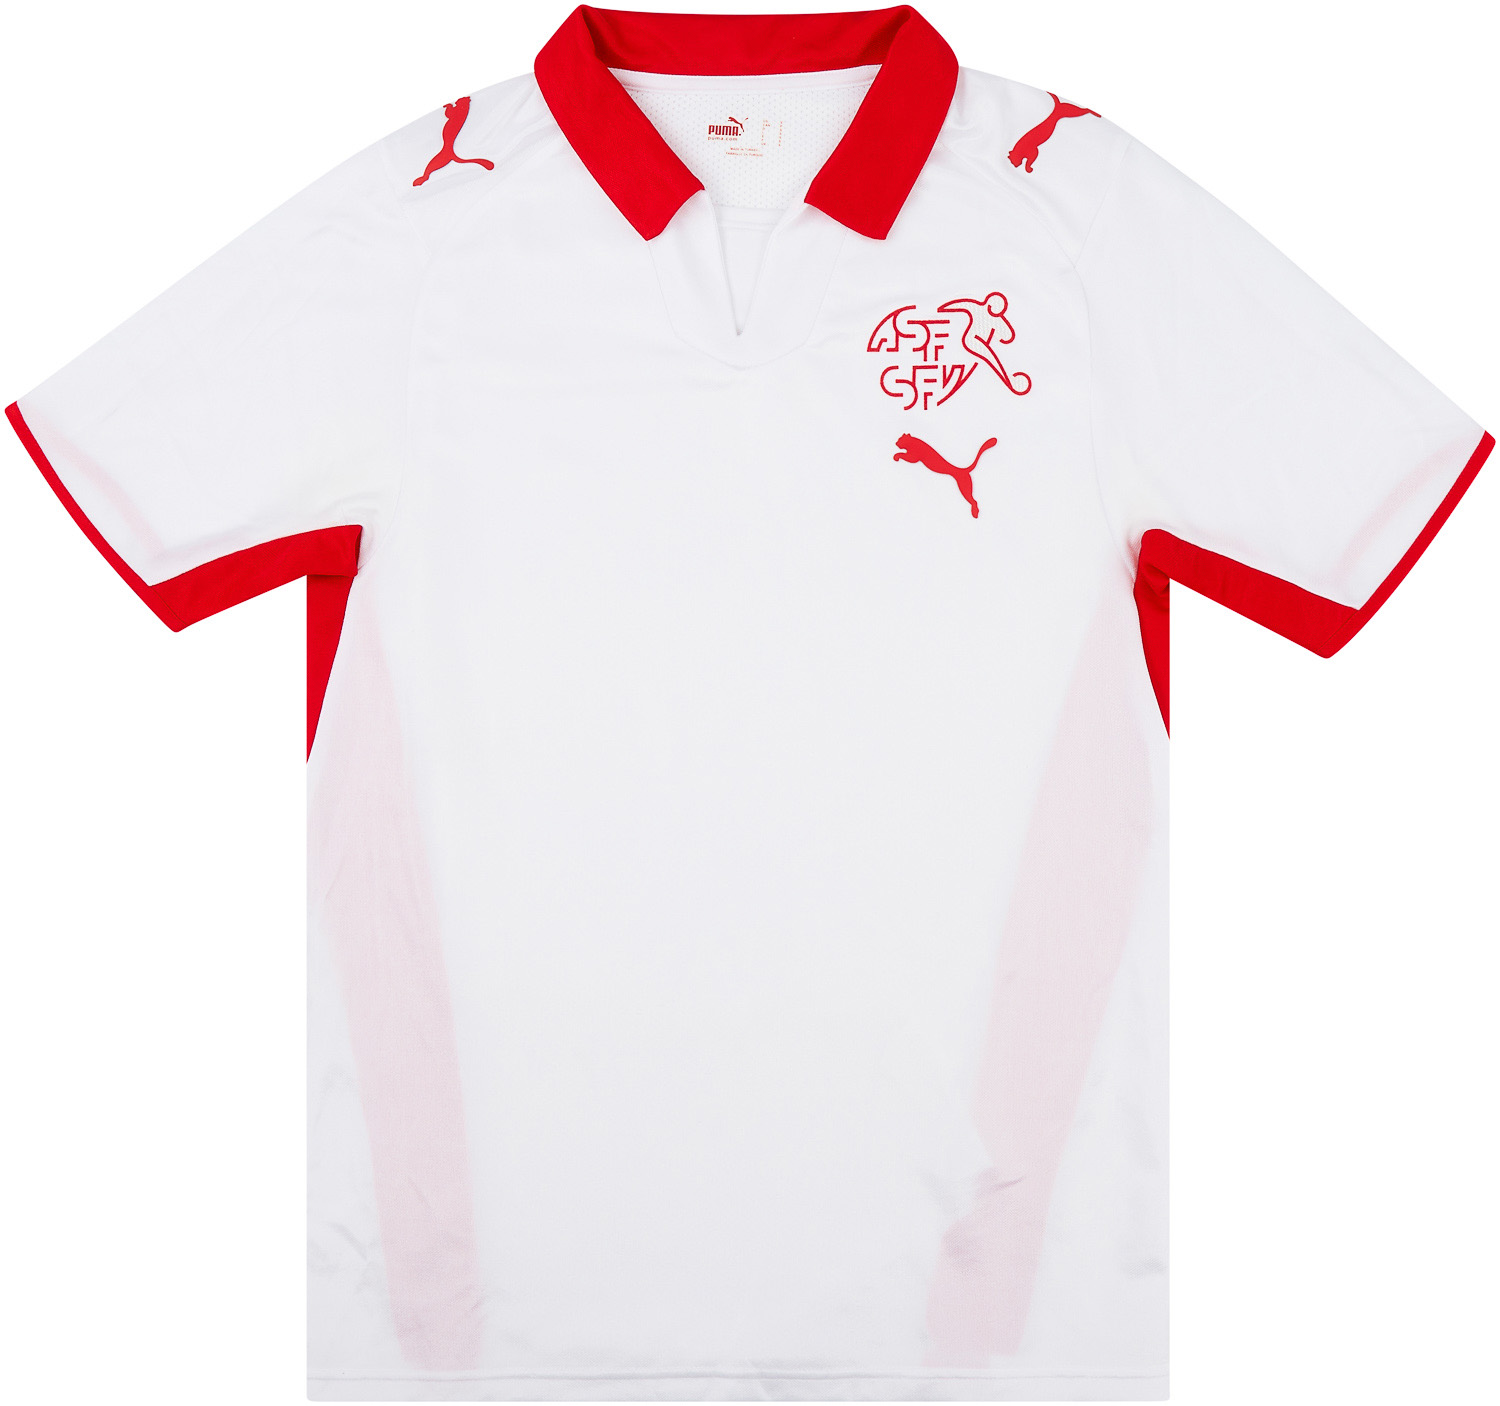 2008-10 Switzerland Away Shirt - 8/10 - ()